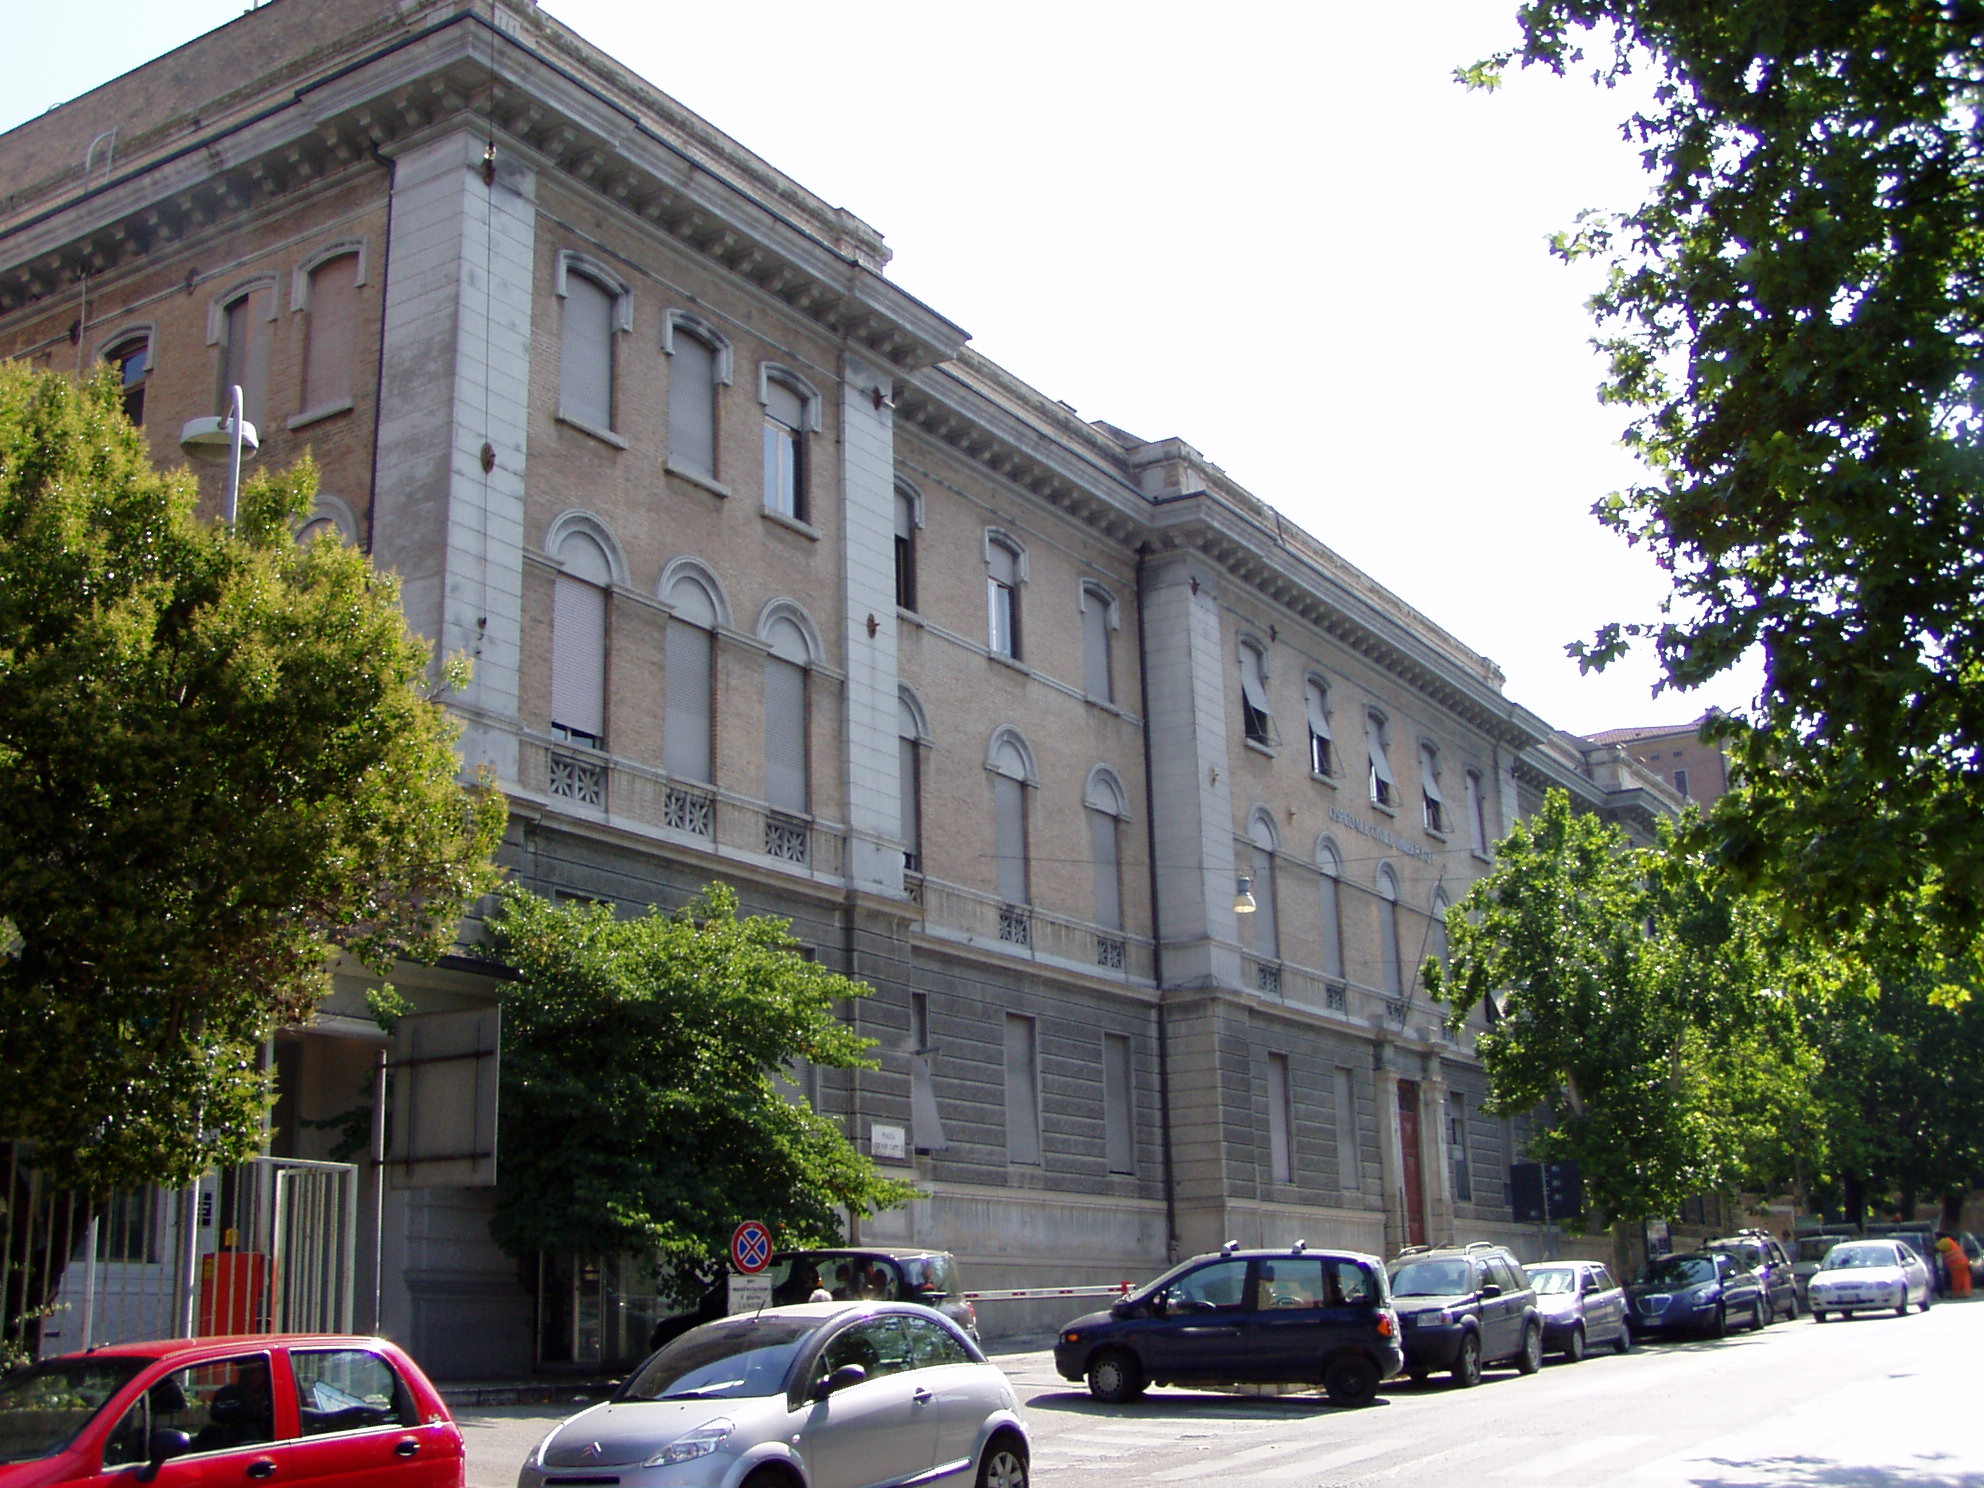 Ospedale civile Umberto I (ospedale, civile) - Ancona (AN) 